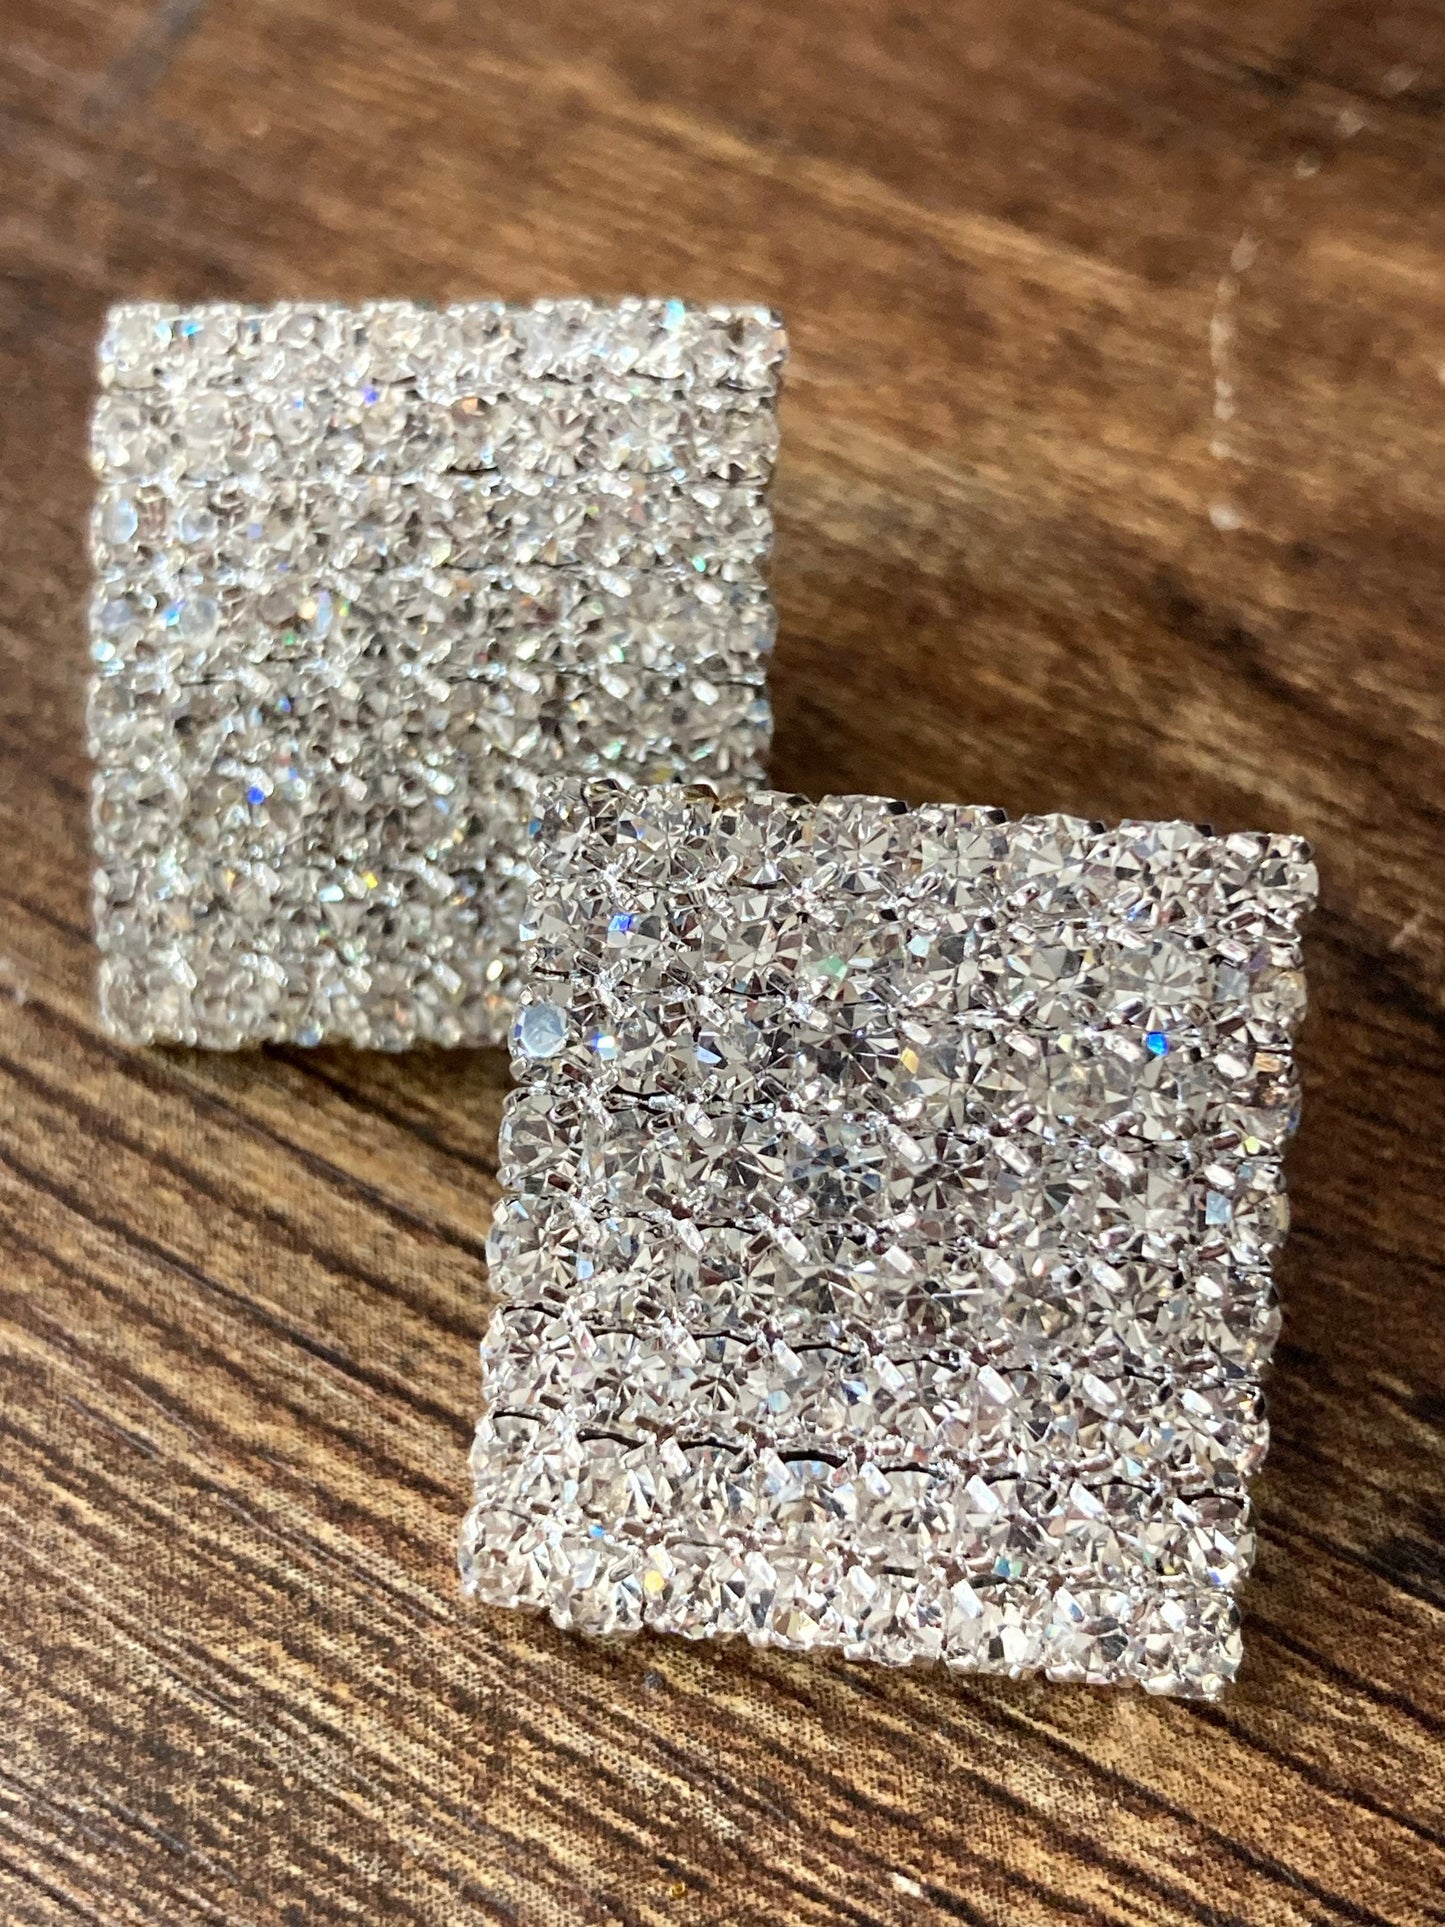 2cm large square diamanté stud pierced earrings bling party